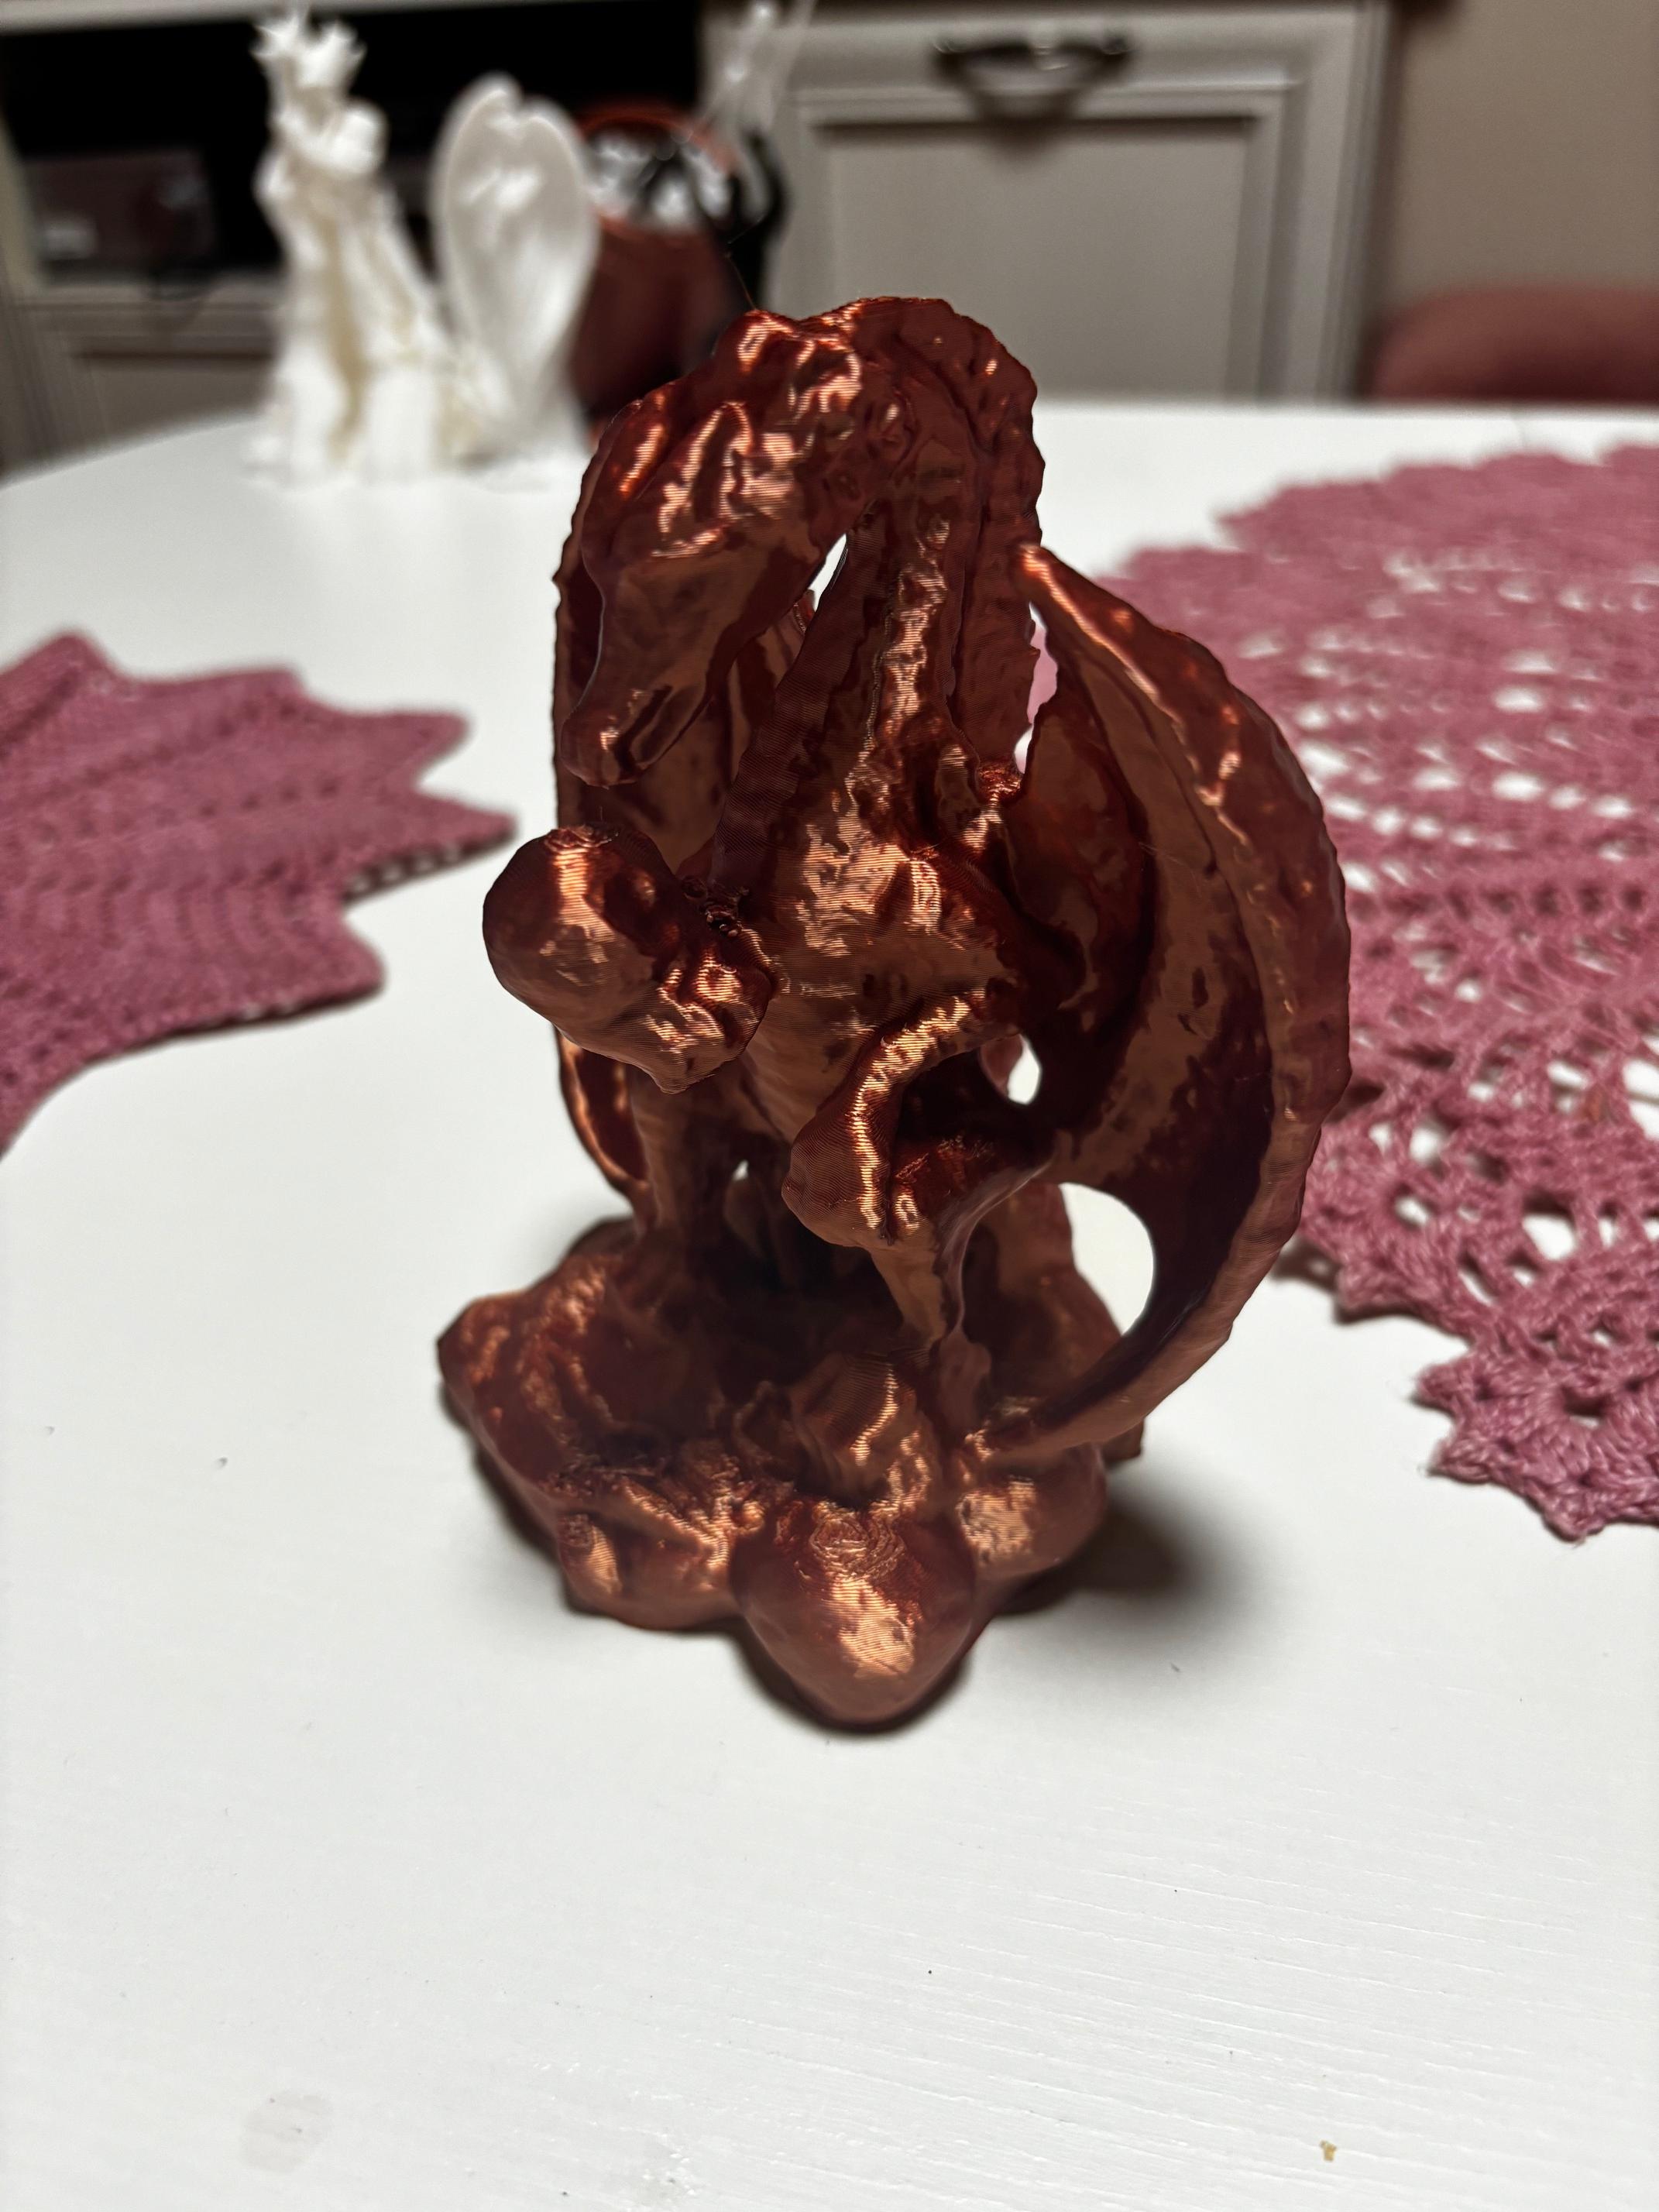 Sculpture of a dragon 3d model